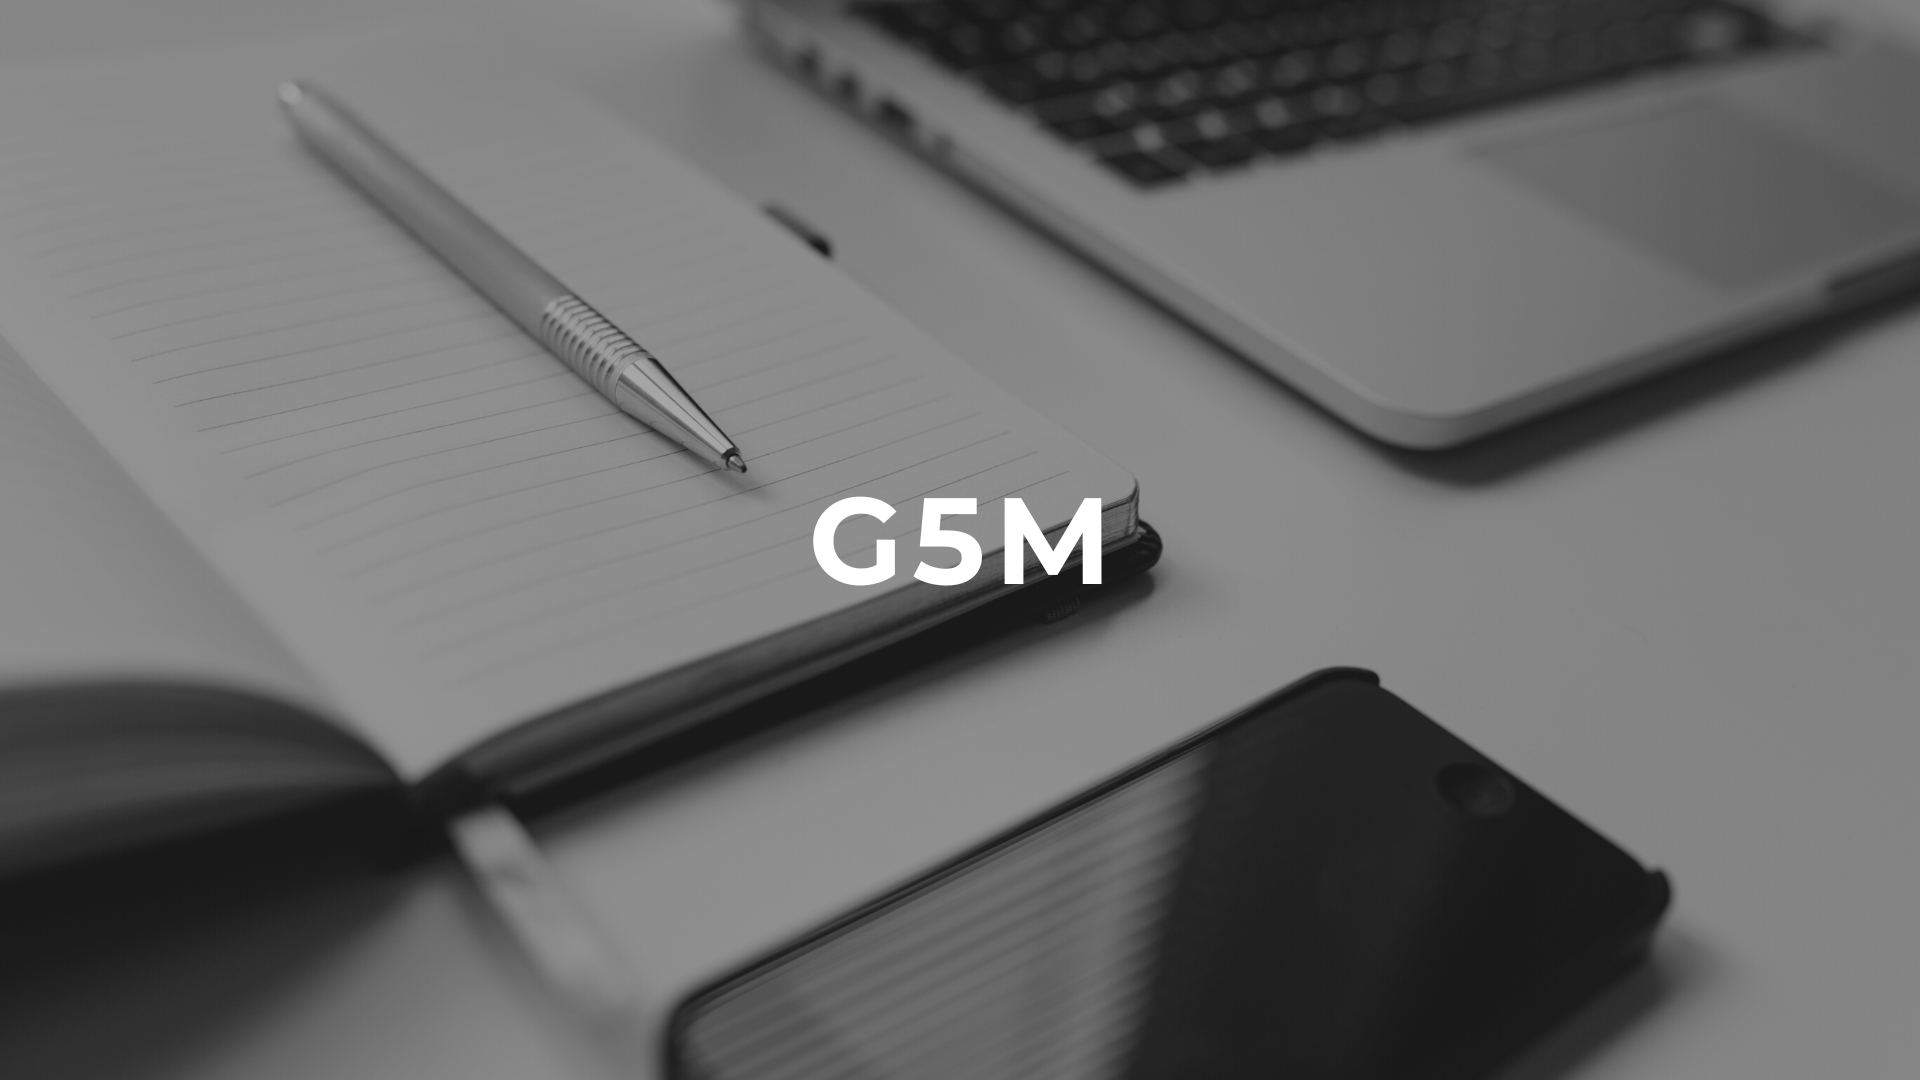 Gestão em 5 Minutos (G5M) – Gestão empresarial